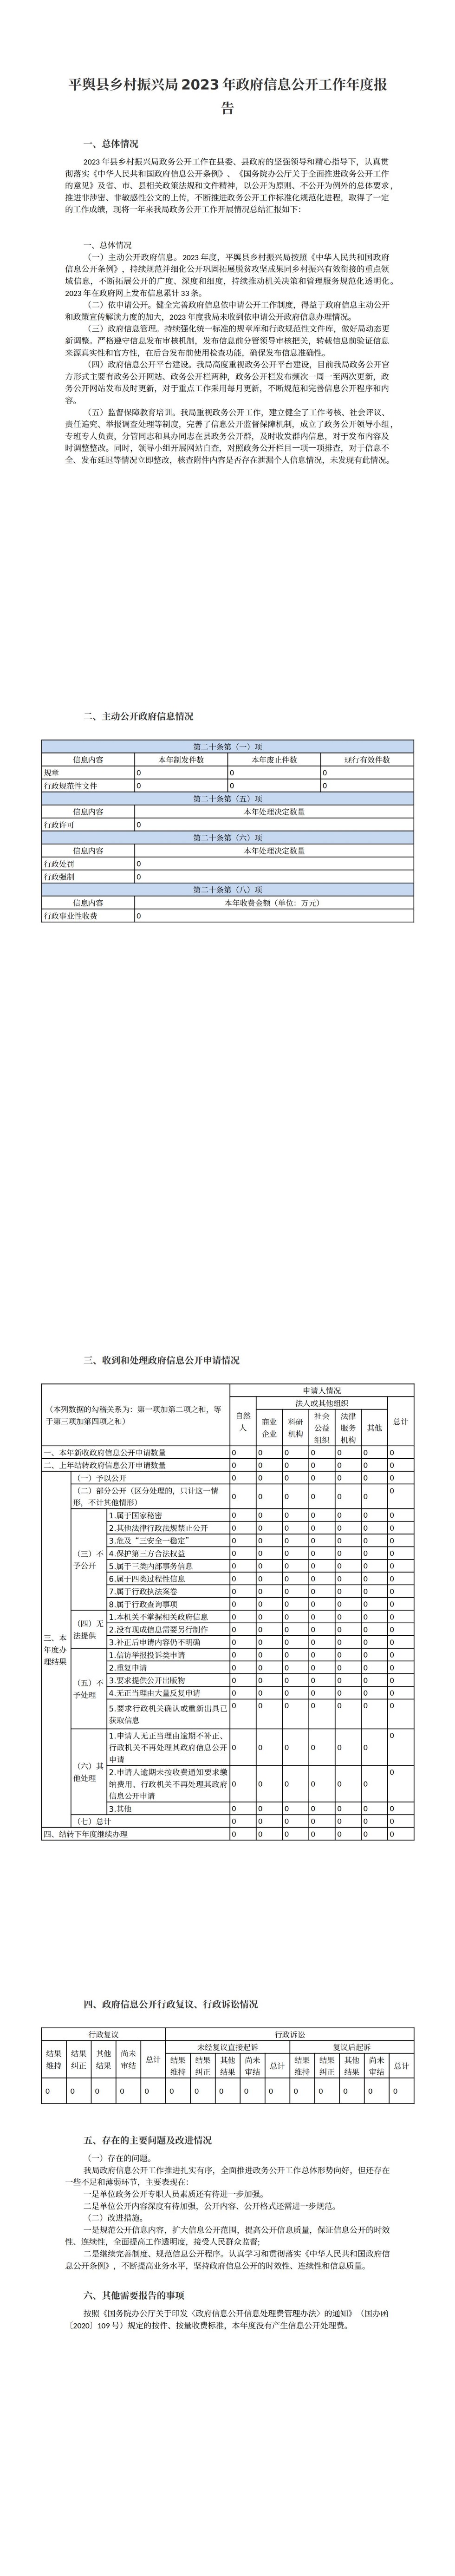 平舆县乡村振兴局2023年政府信息公开工作年度报告_00.jpg